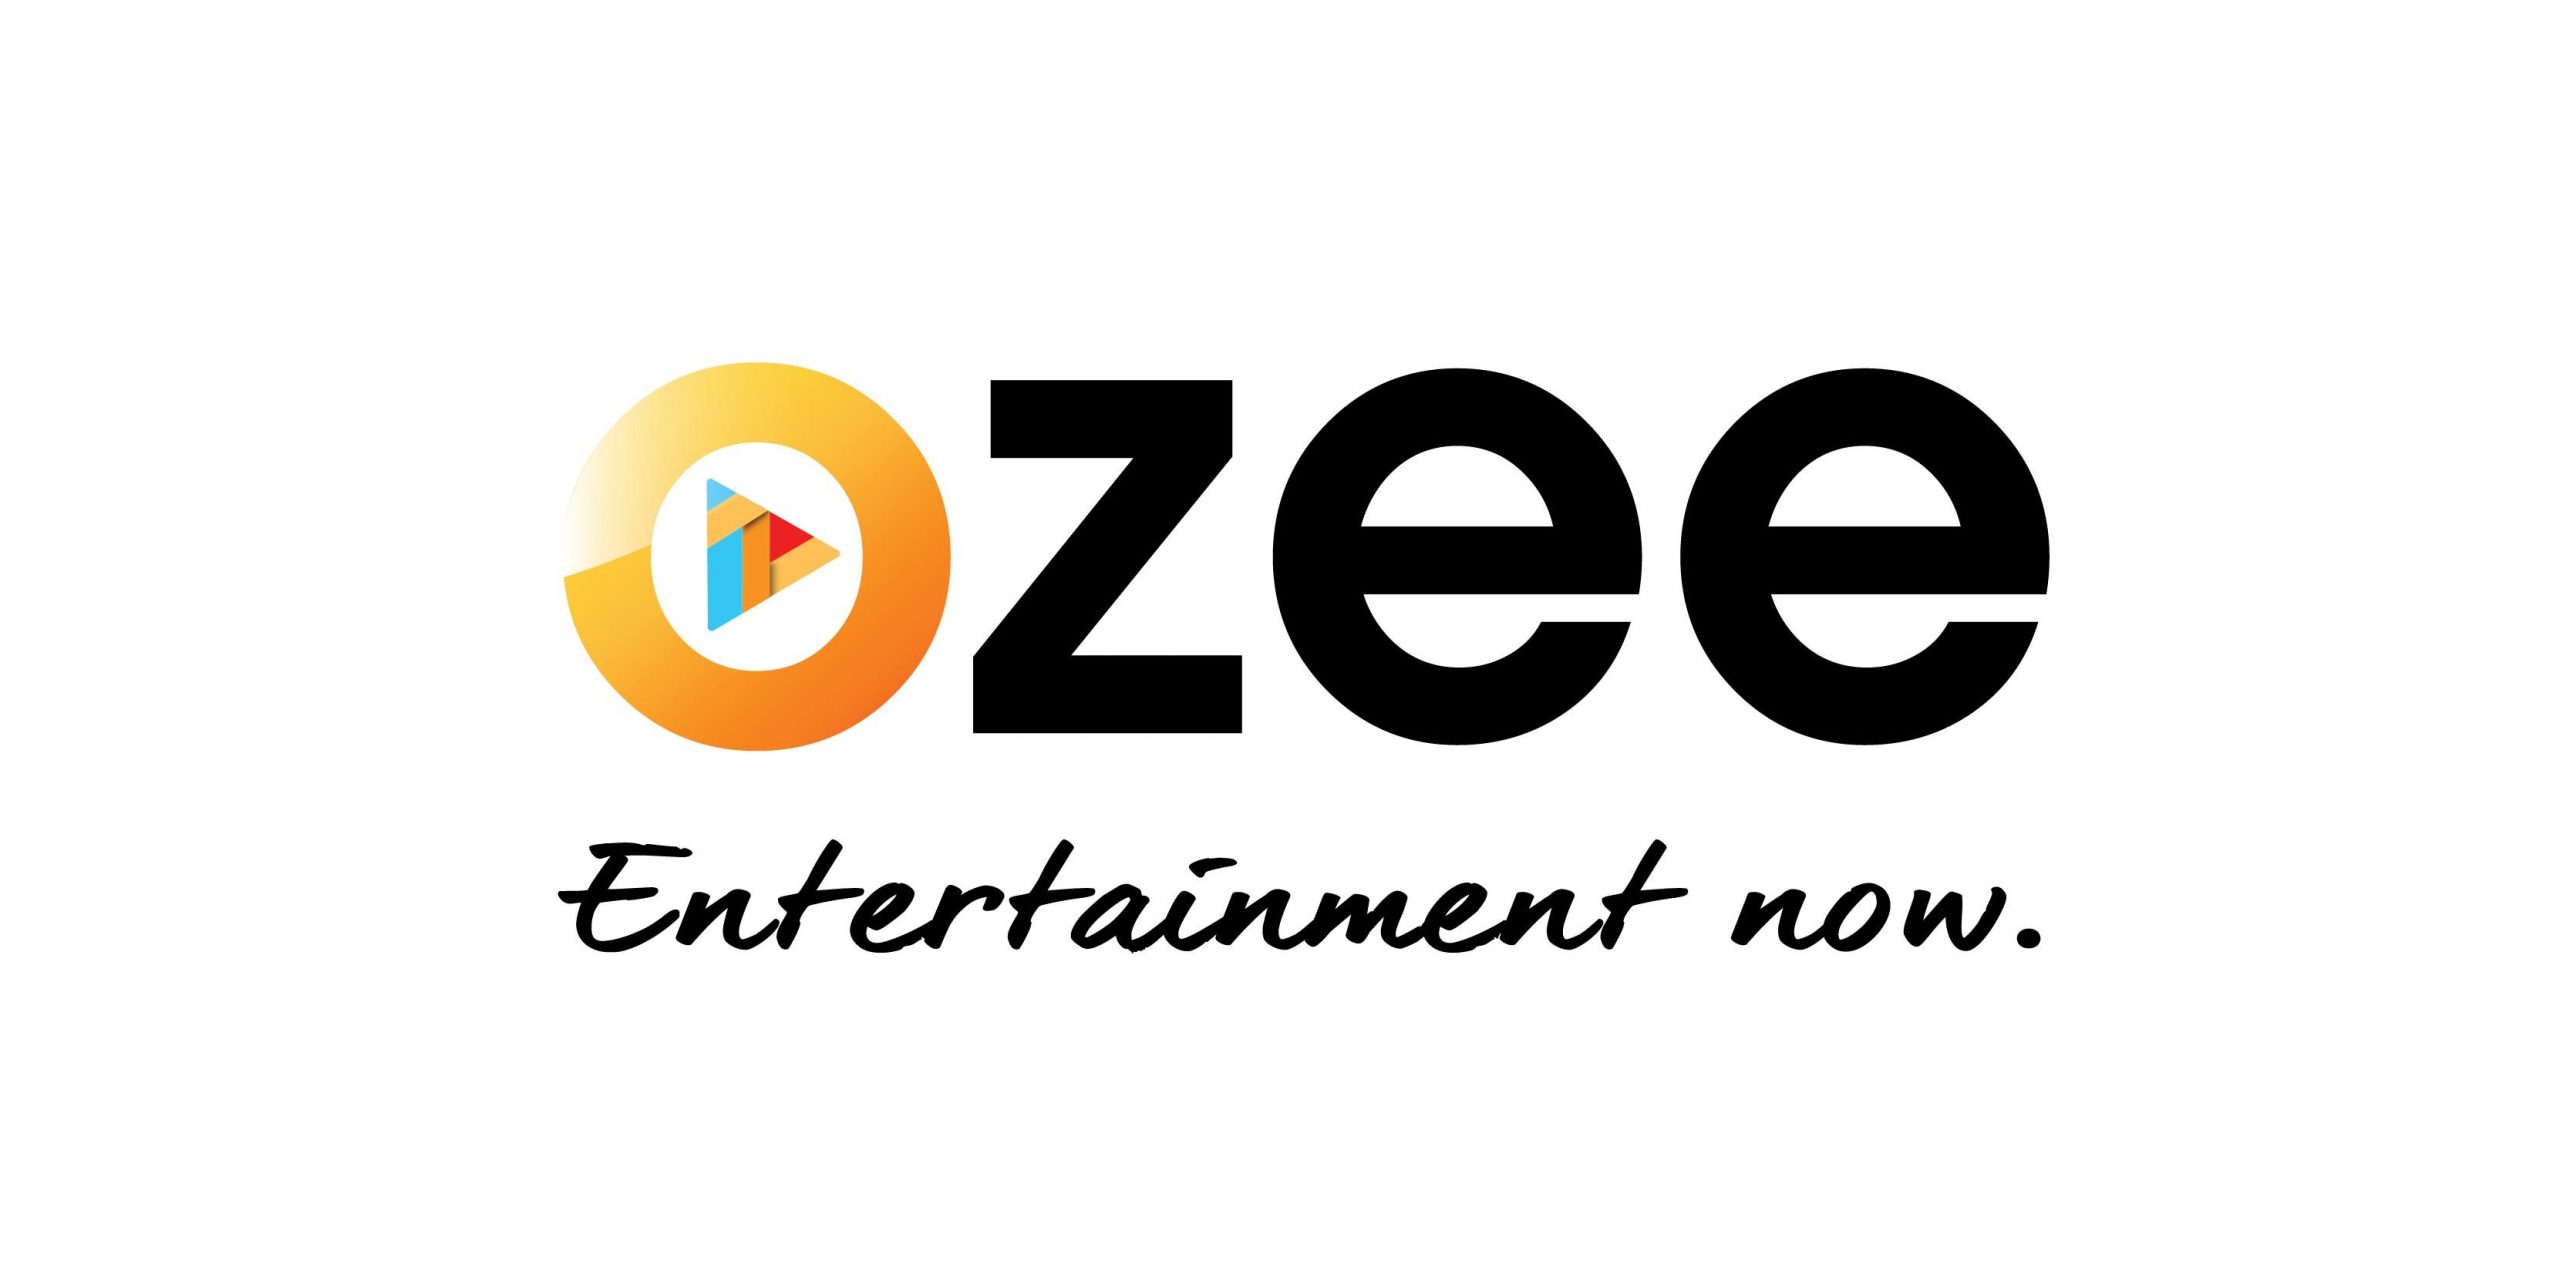 ozee.com zee telugu